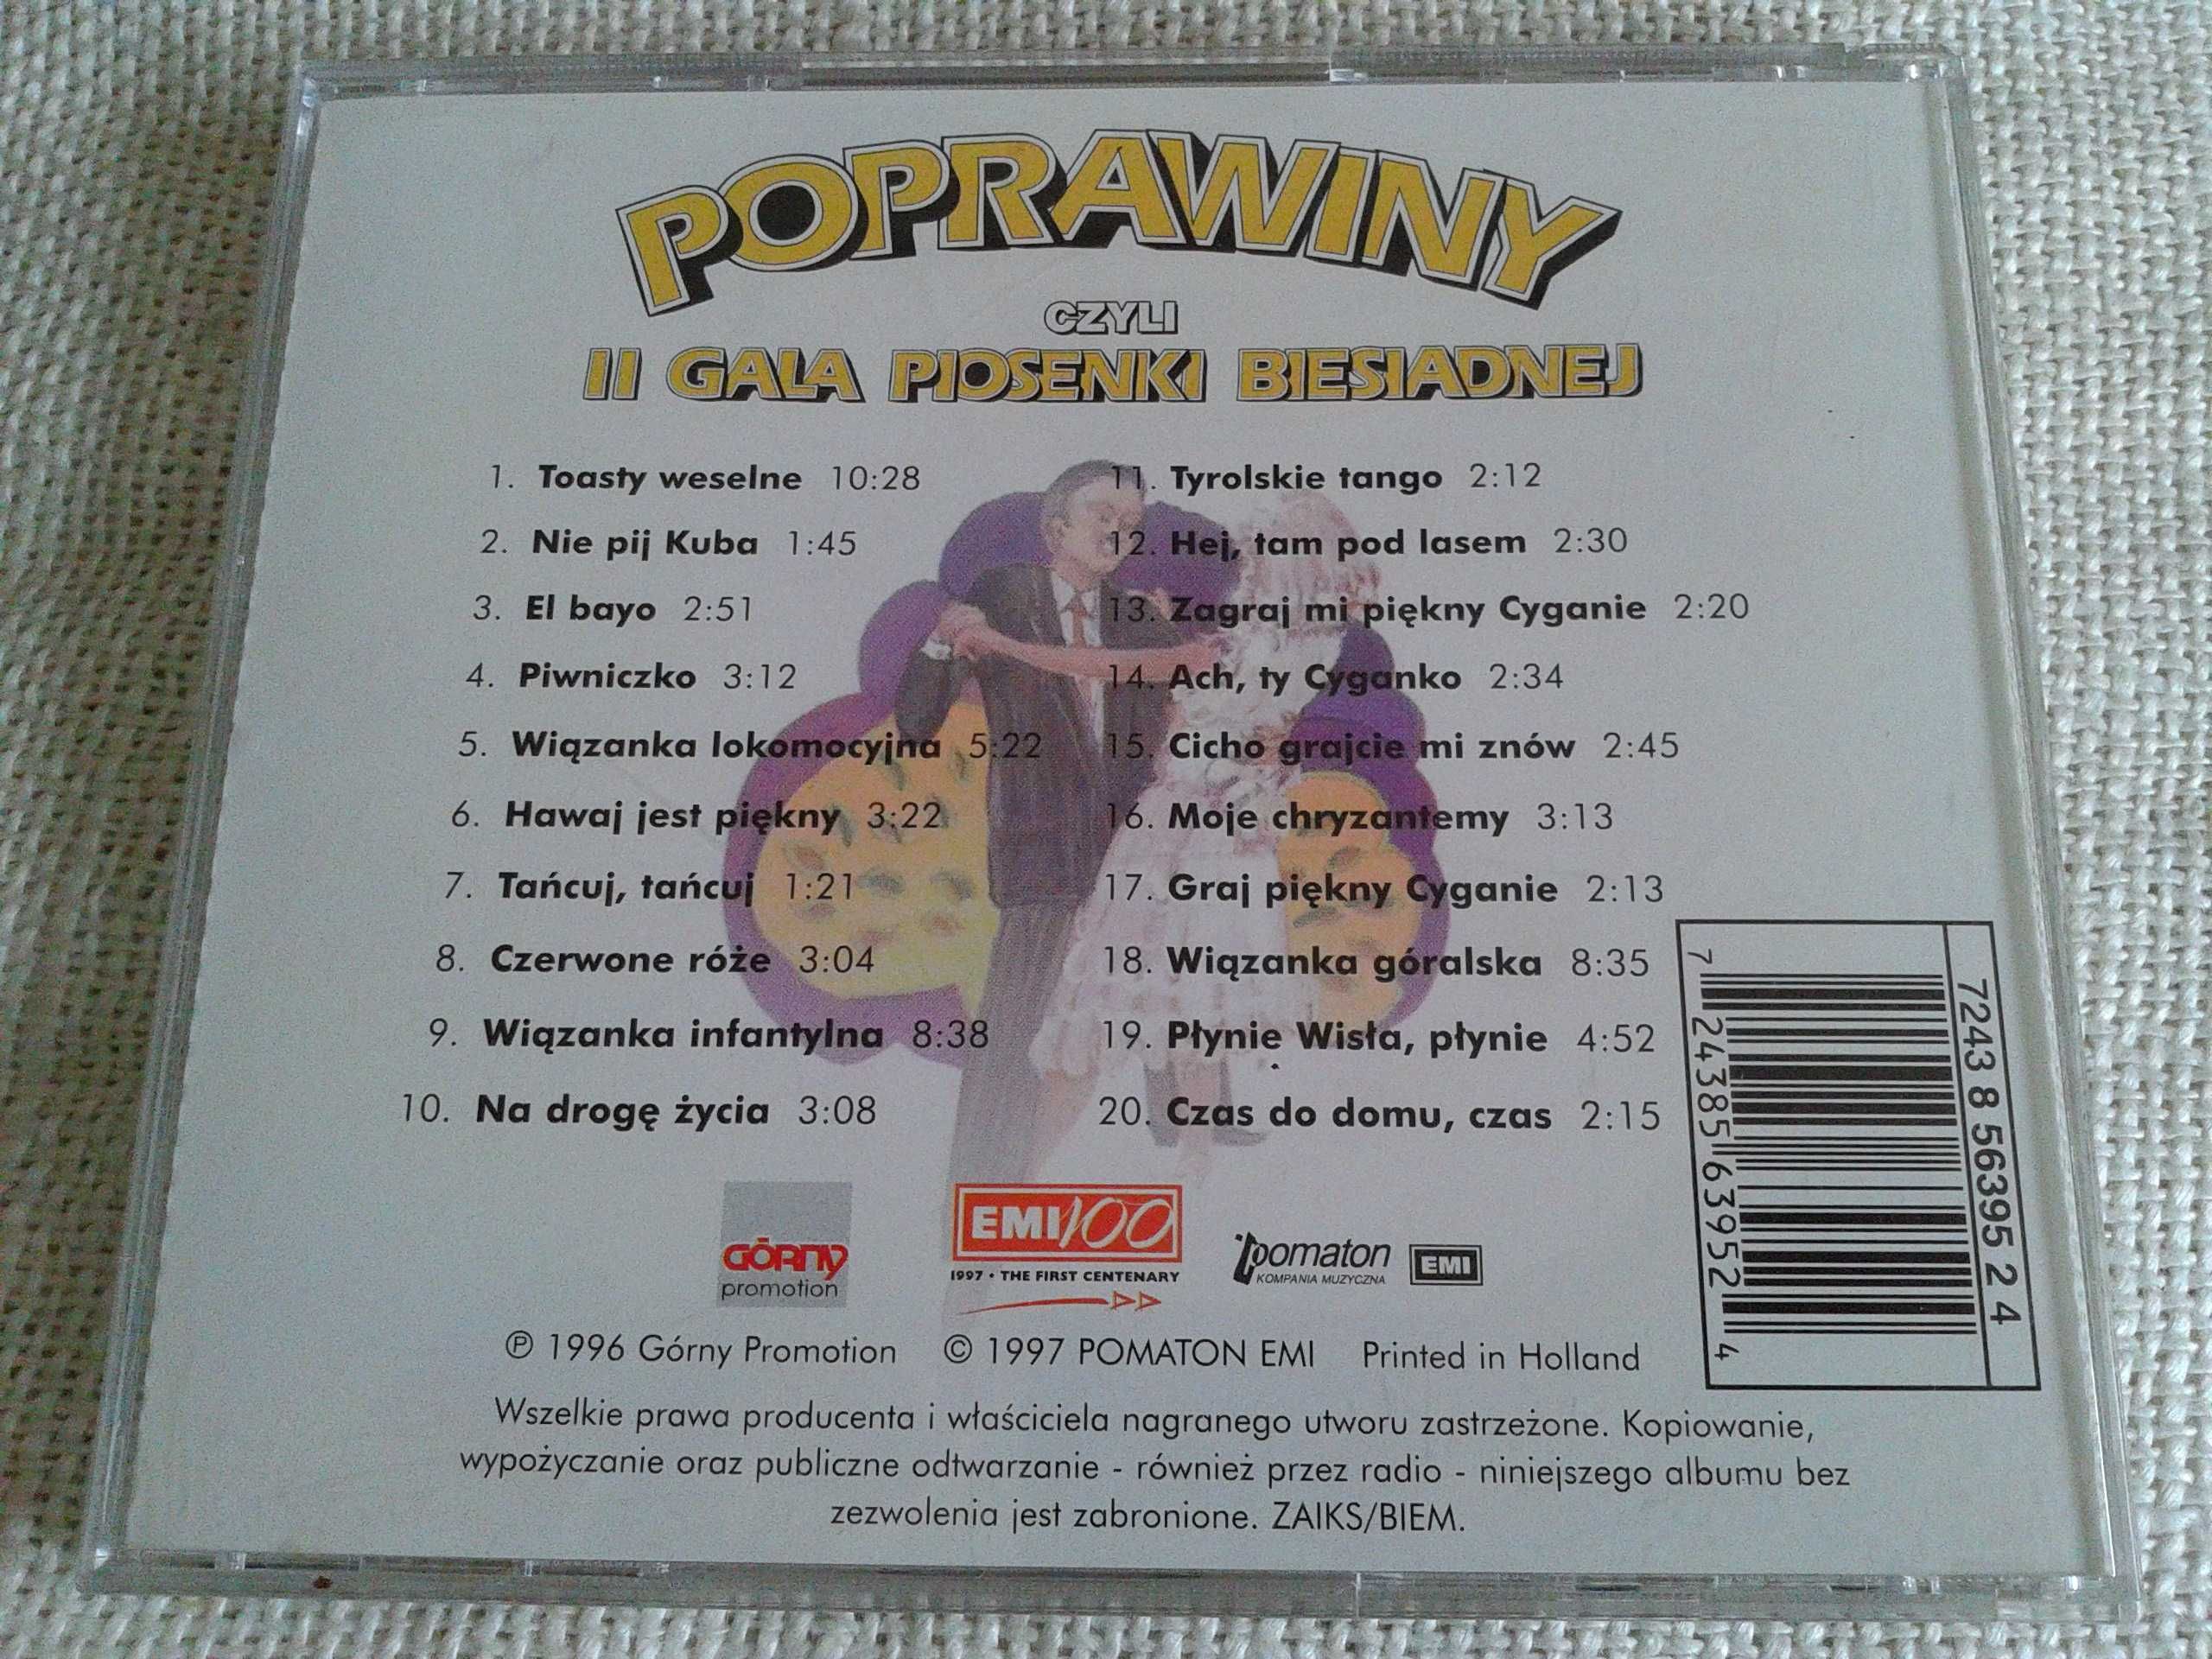 Poprawiny czyli II Gala Piosenki Biesiadnej  CD